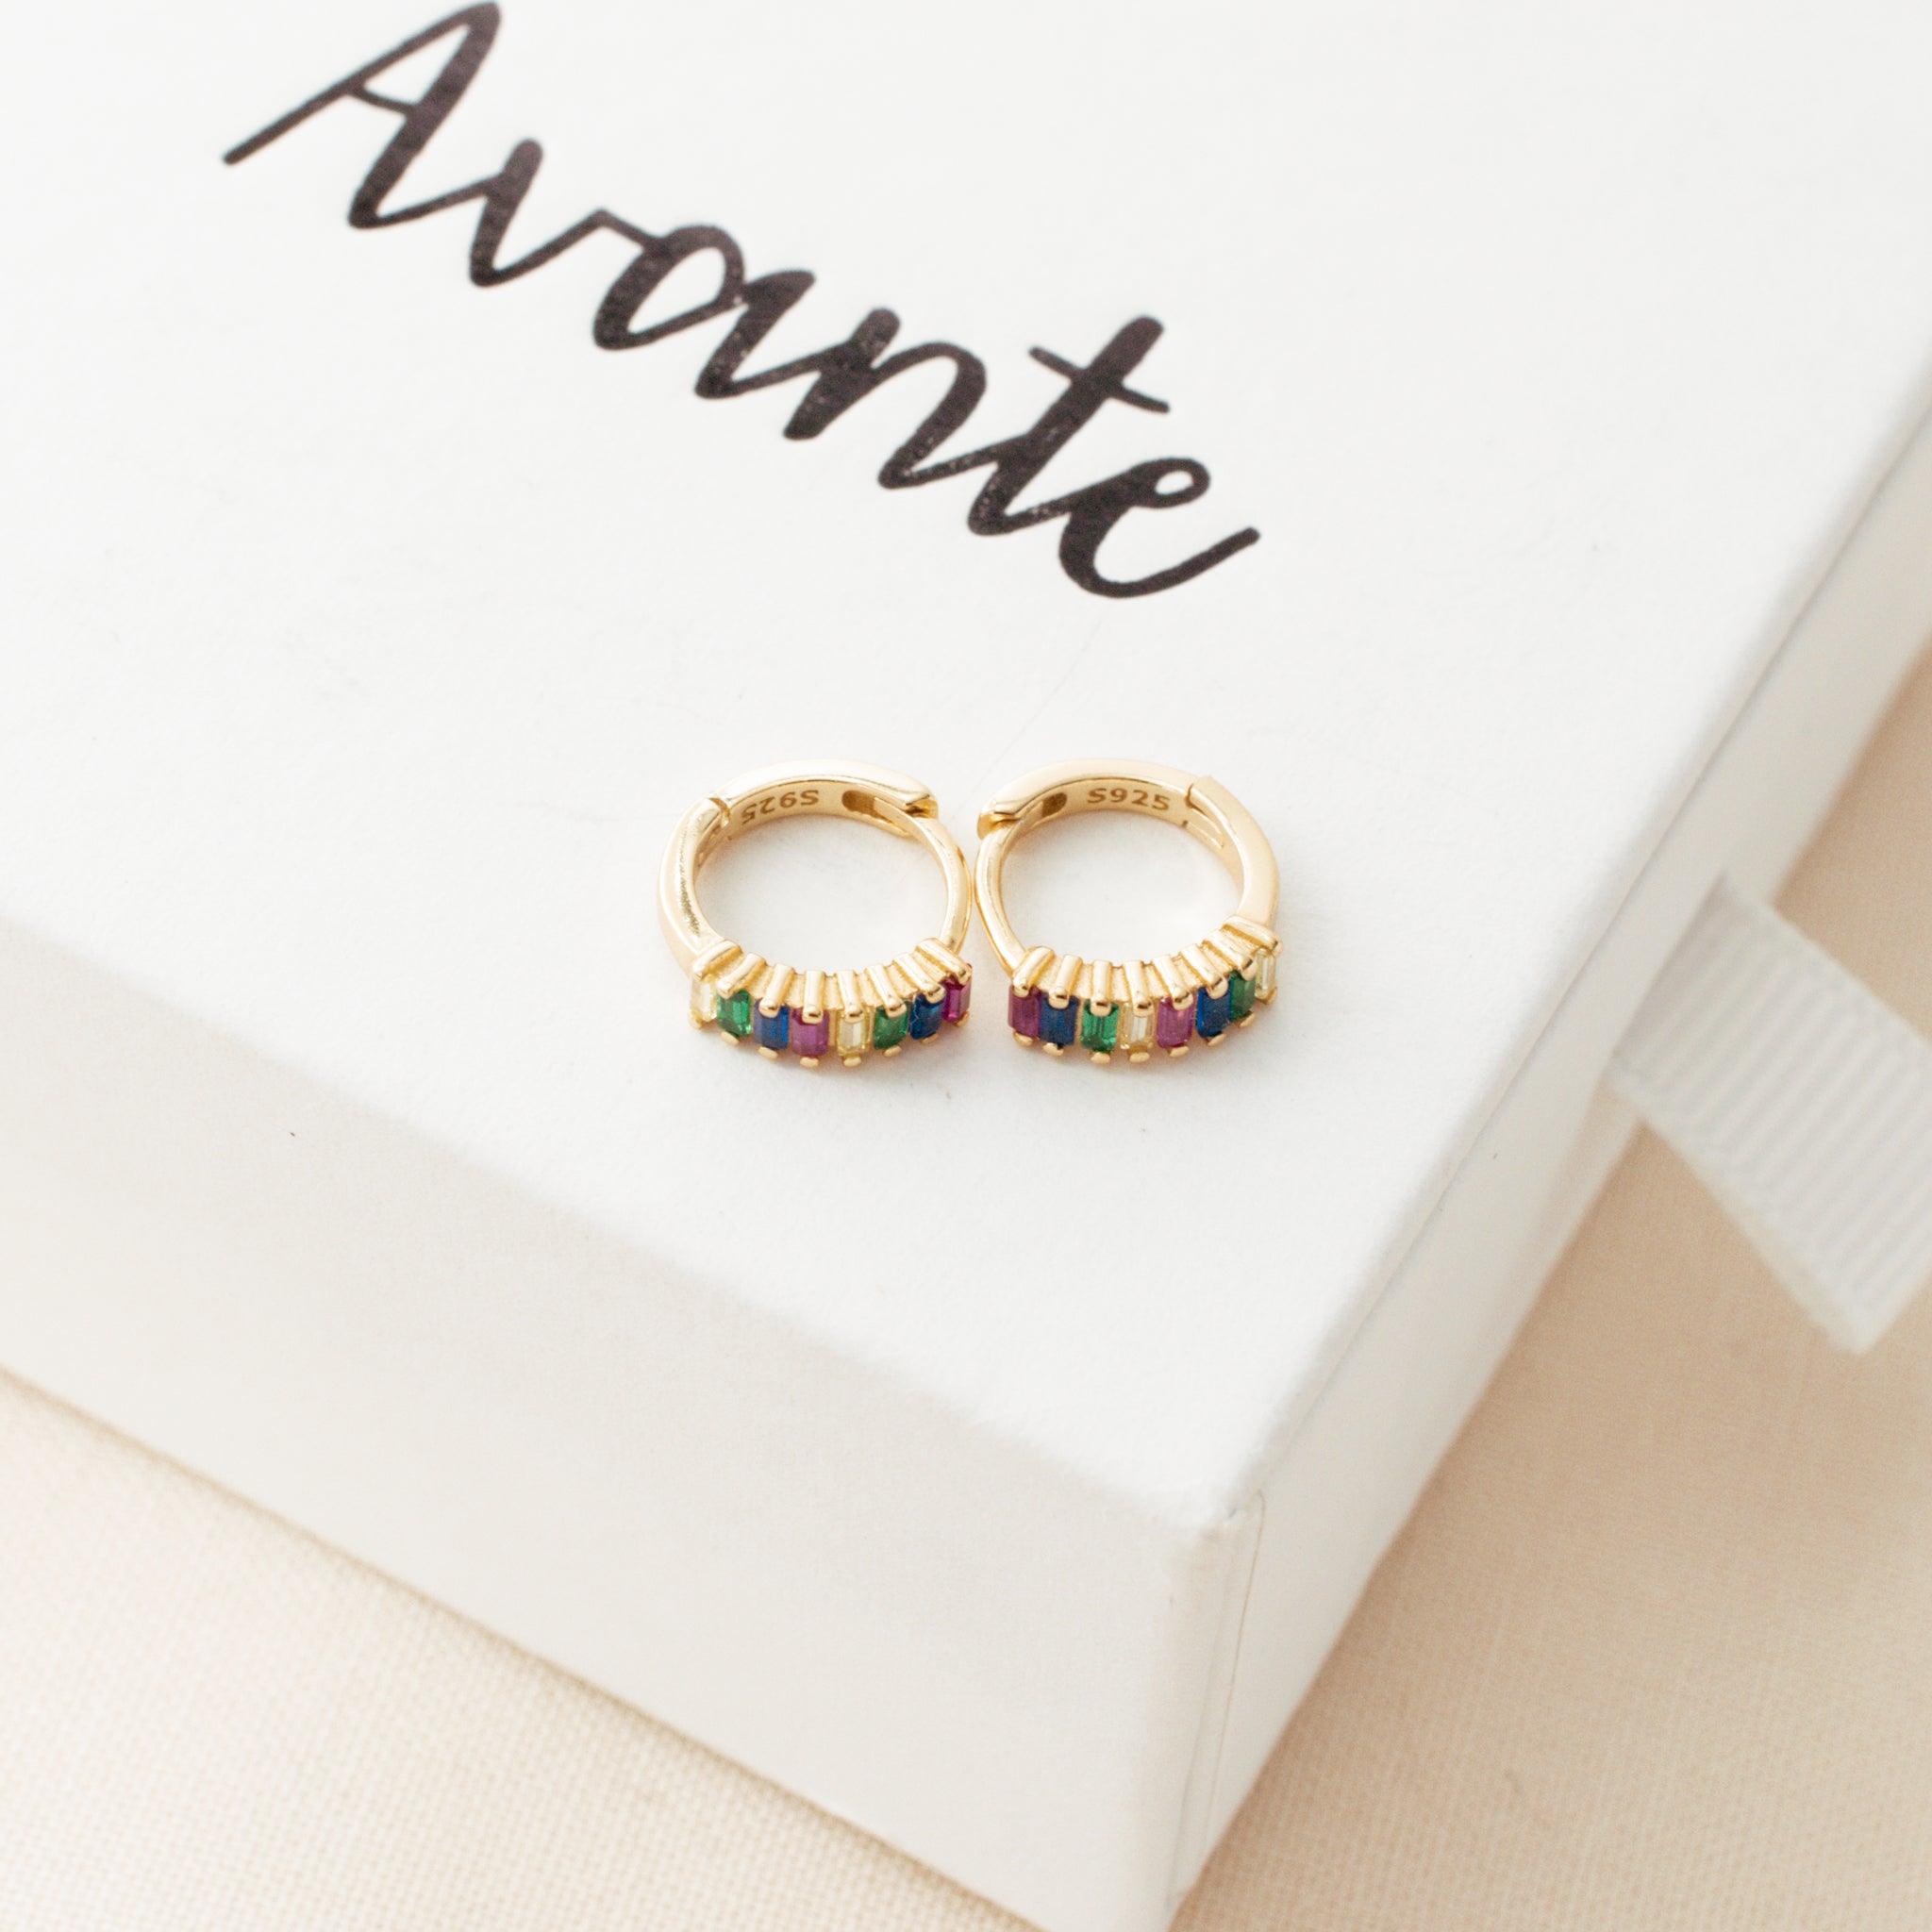 Multicolor Crystal Hoop Earrings on white jewelry box by Avante Jewel | Avante Jewelry 